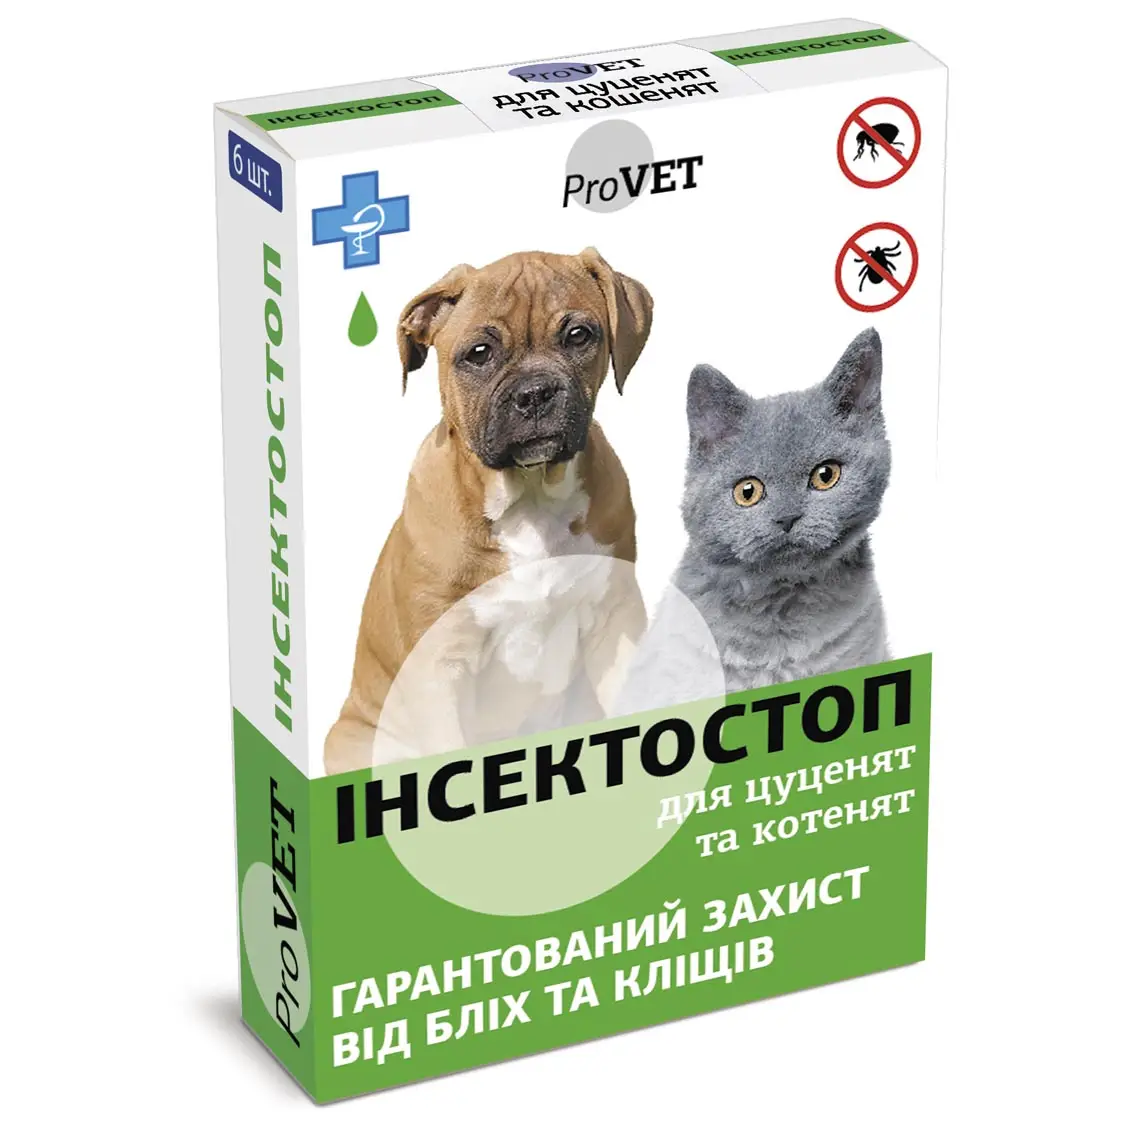 Капли на холку для кошек и собак ProVET Инсектостоп, от внешних паразитов, до 3 кг, 6 пипеток по 0,5 мл (PR020027) - фото 1